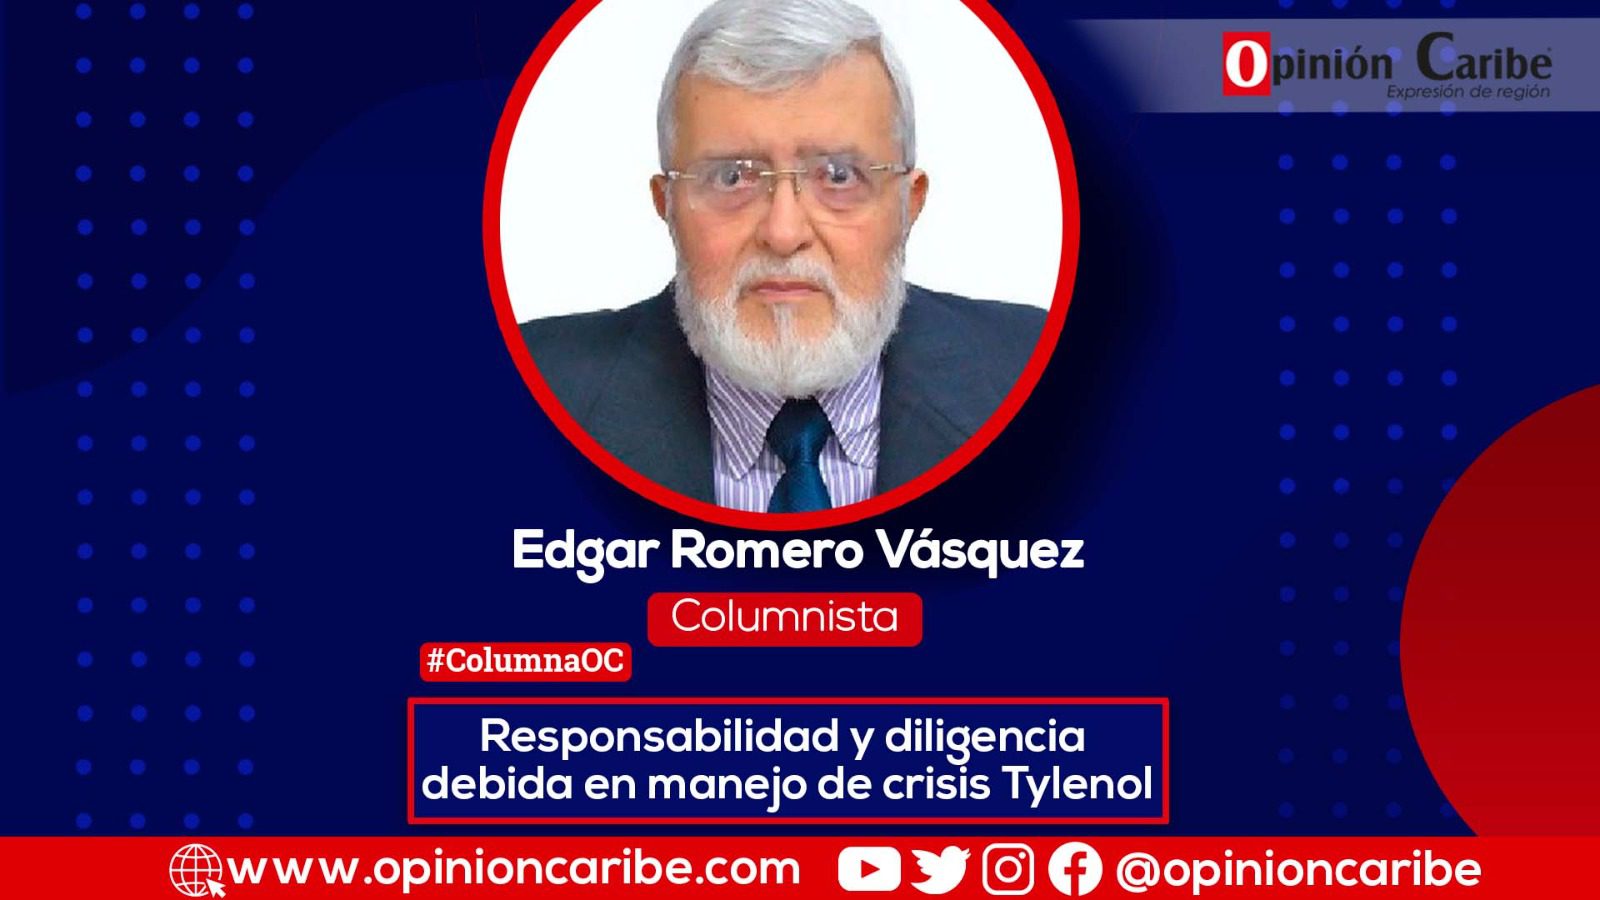 Columnista Edgar Romero Velásquez - Responsabilidad y diligencia debida en manejo de crisis Tylenol